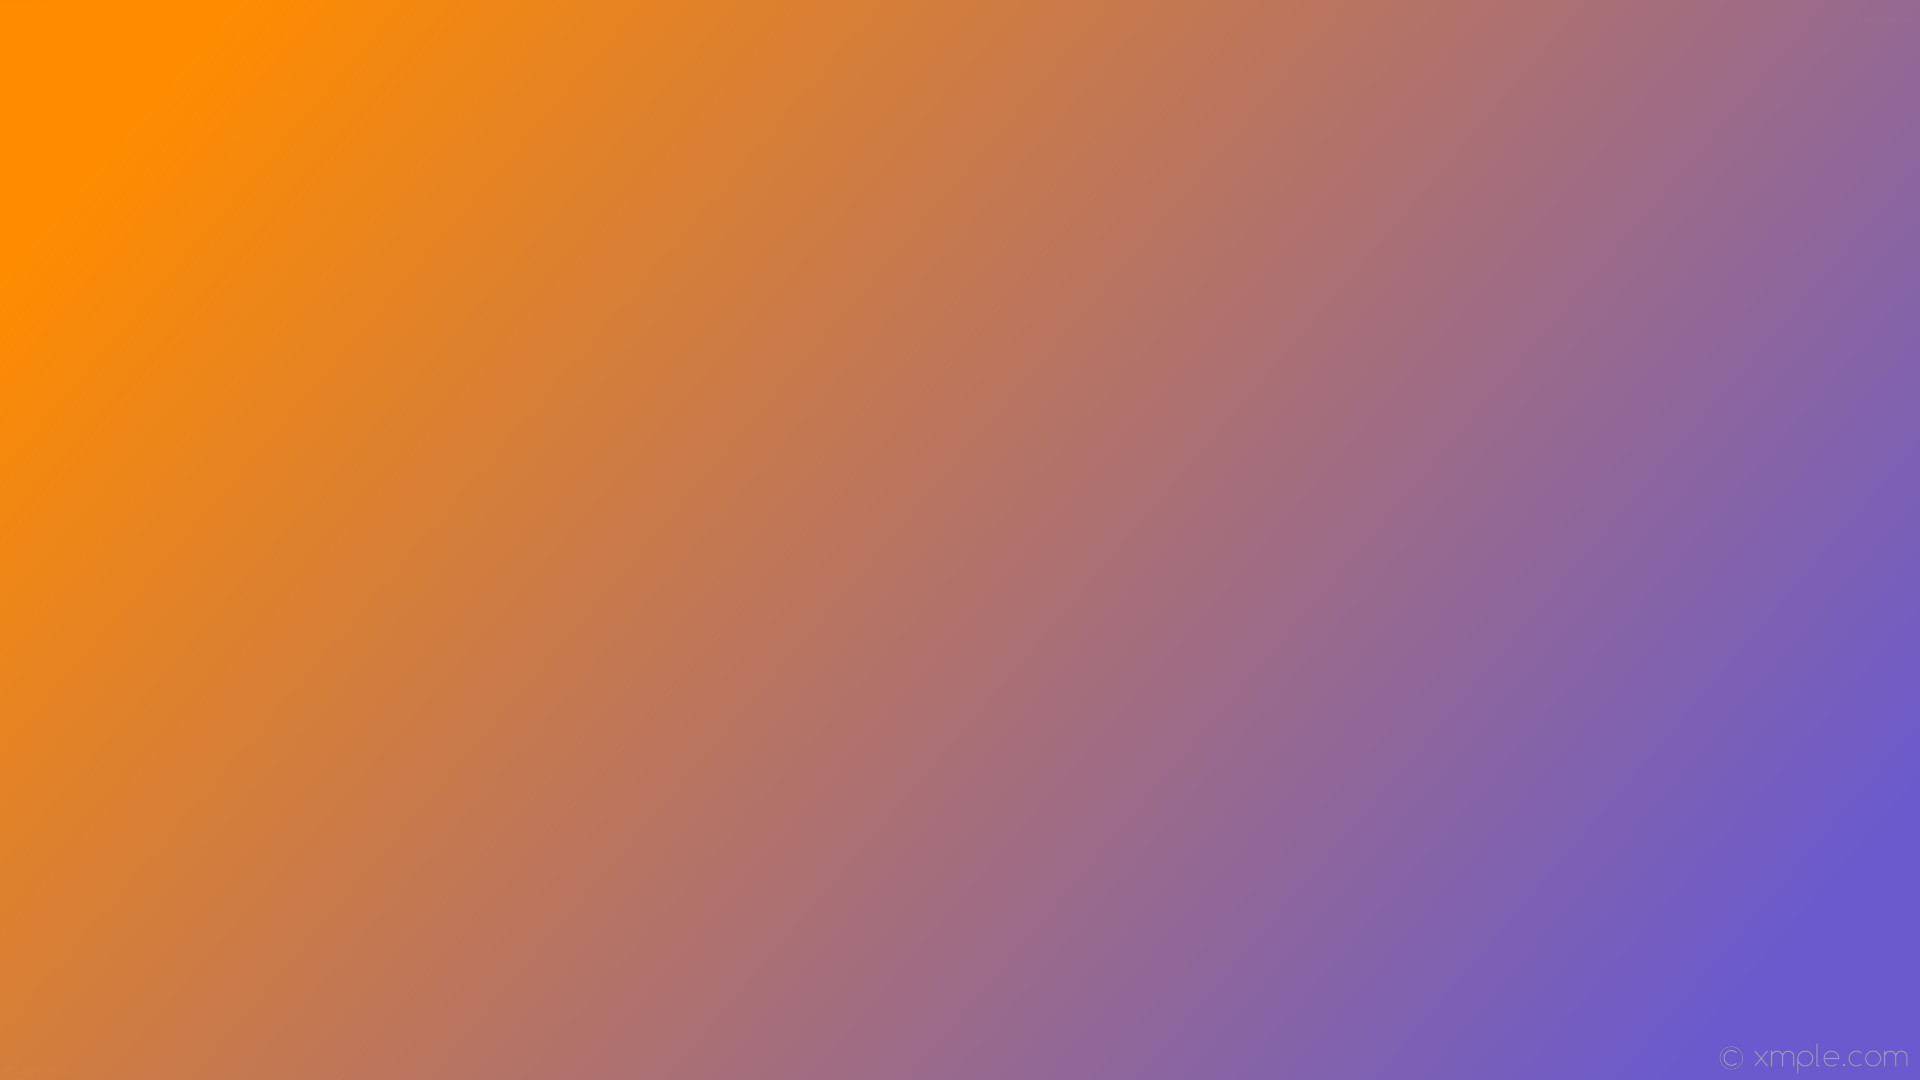 wallpaper purple orange gradient linear slate blue dark orange #6a5acd  #ff8c00 345Â°